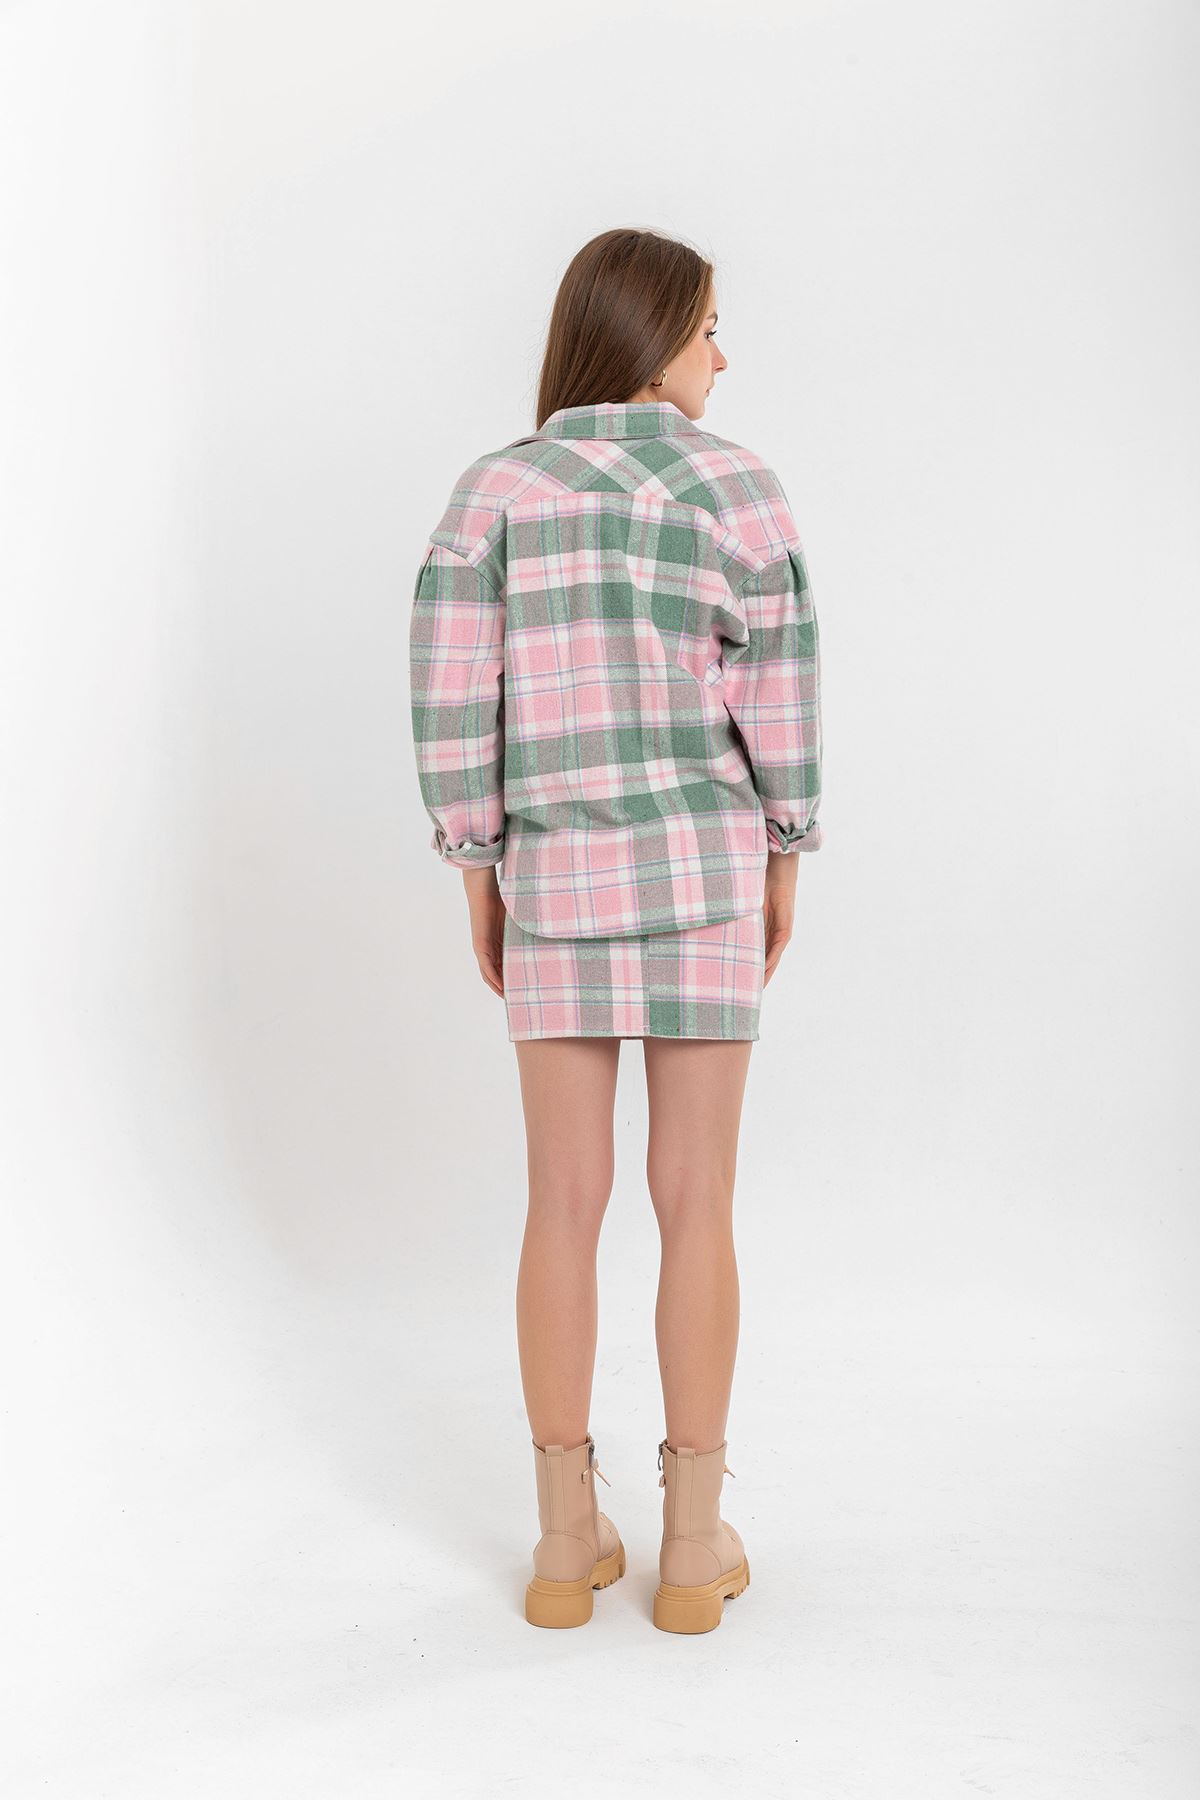 Lumberjack Fabric Tight Fit Striped Mini Skirt - Light Pink